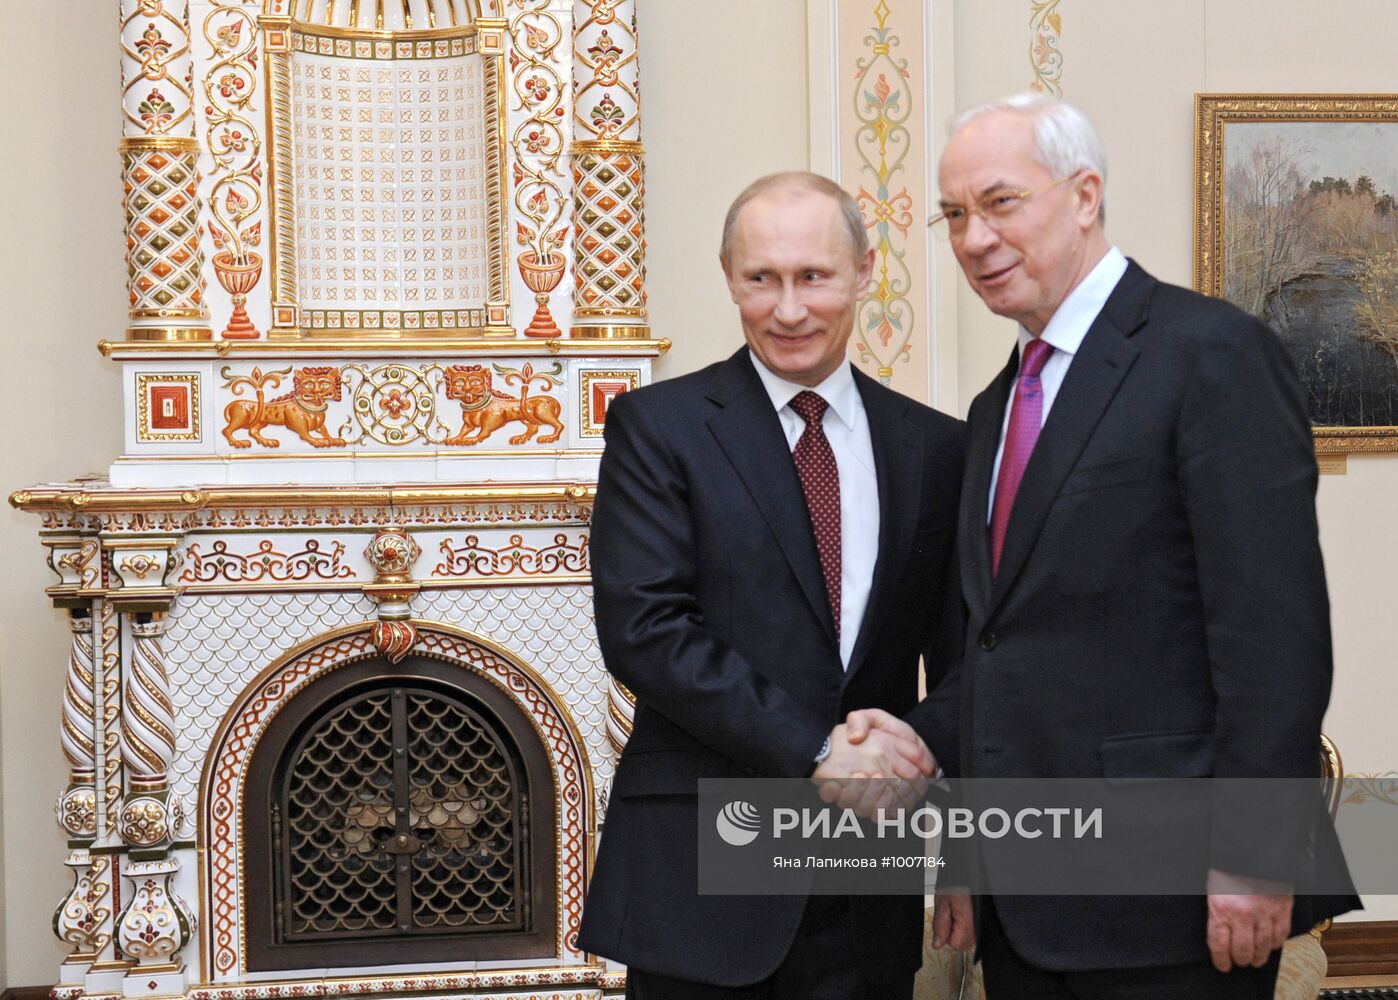 Встреча Владимира Путина и Николая Азарова в Ново-Огарево